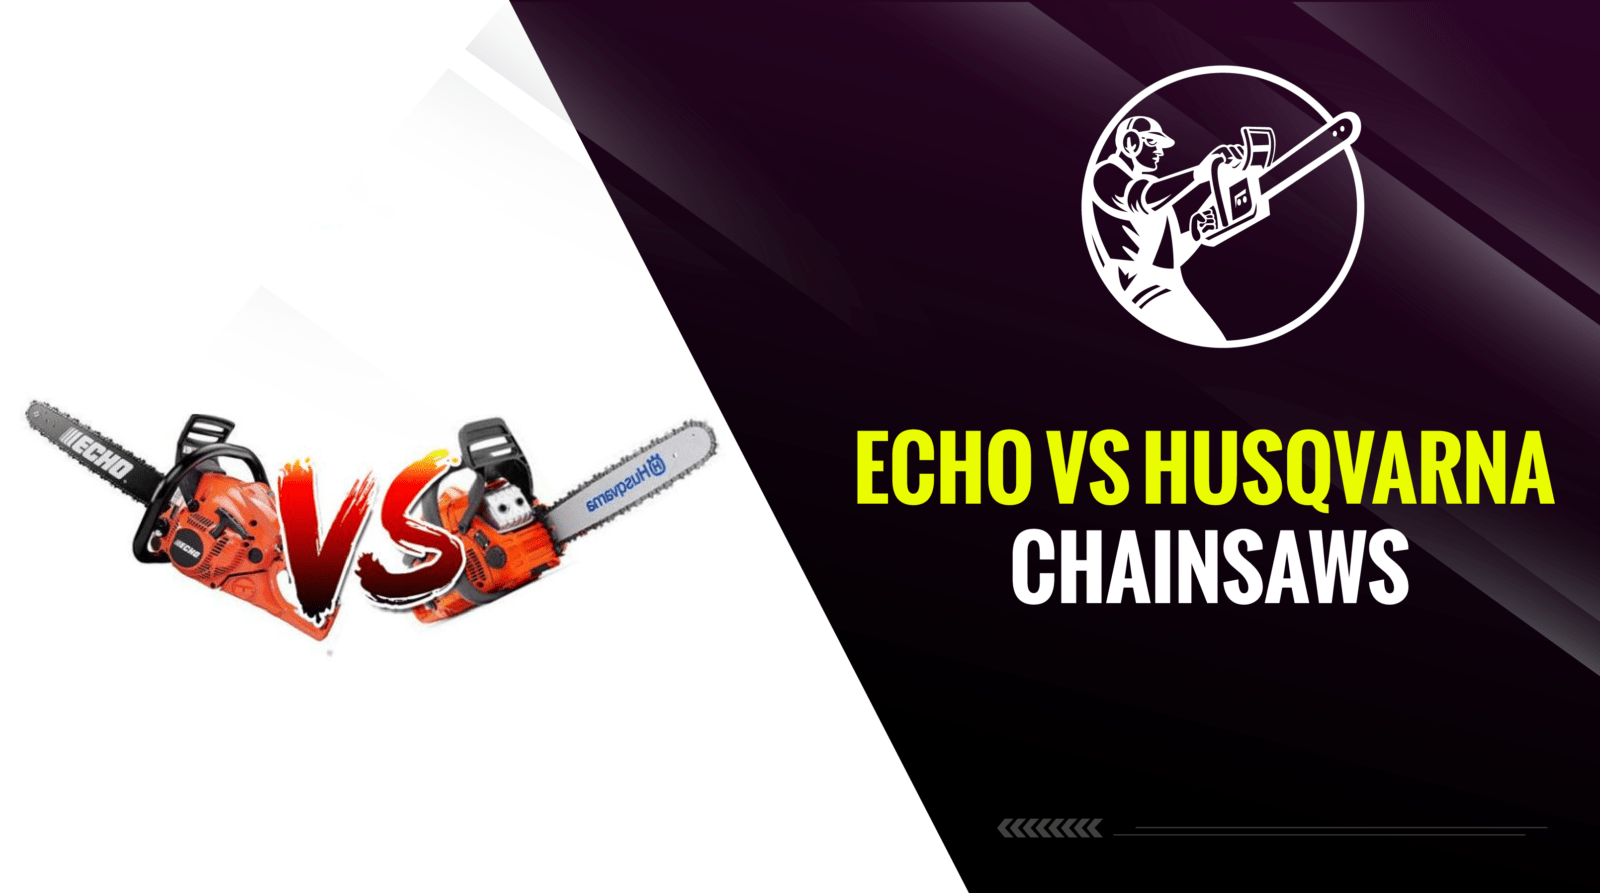 Echo Vs Husqvarna Chainsaws